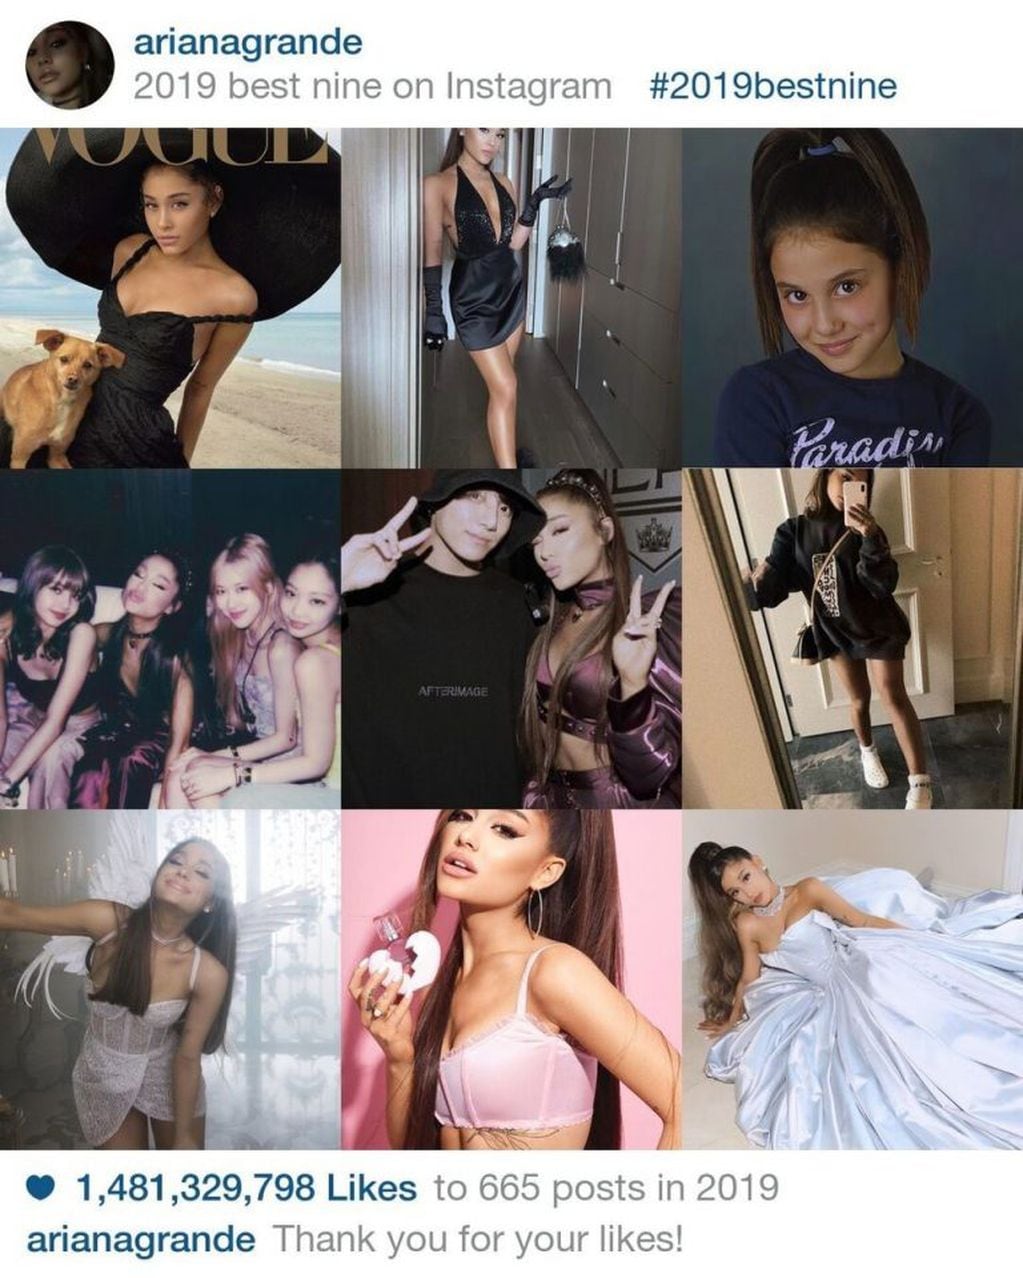 Best Nine de Ariana Grande.